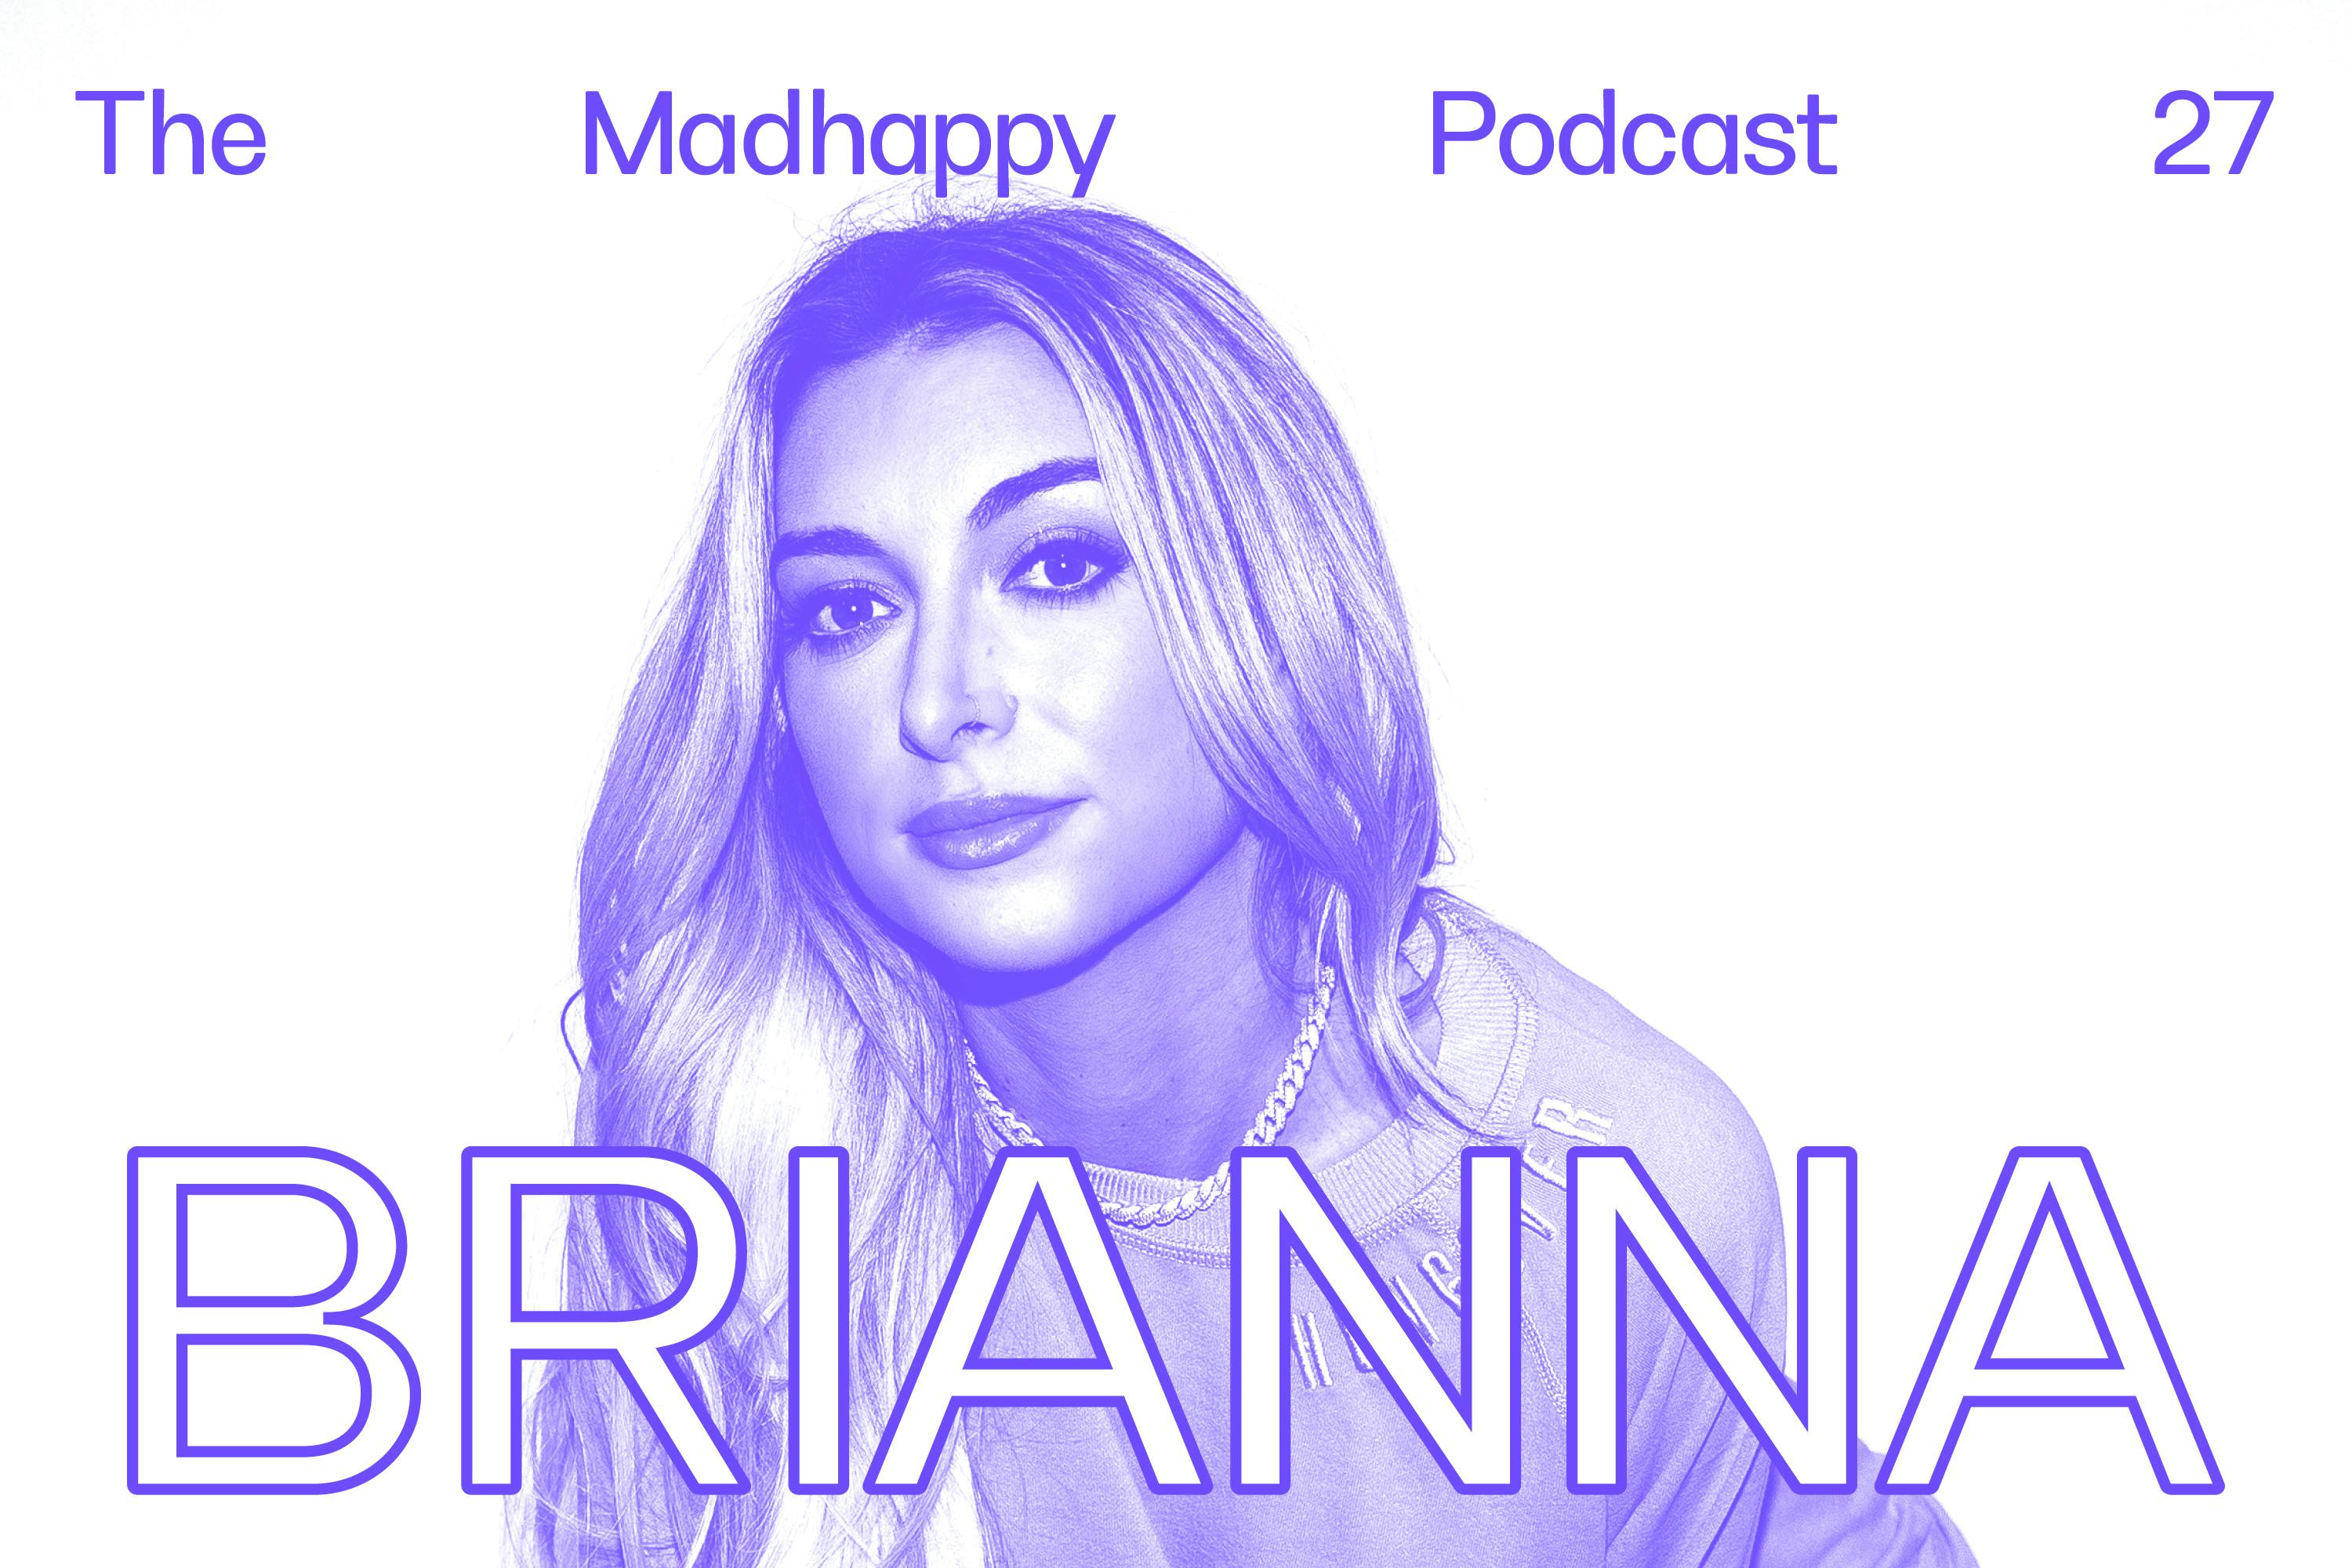 Episode 27: Brianna LaPaglia